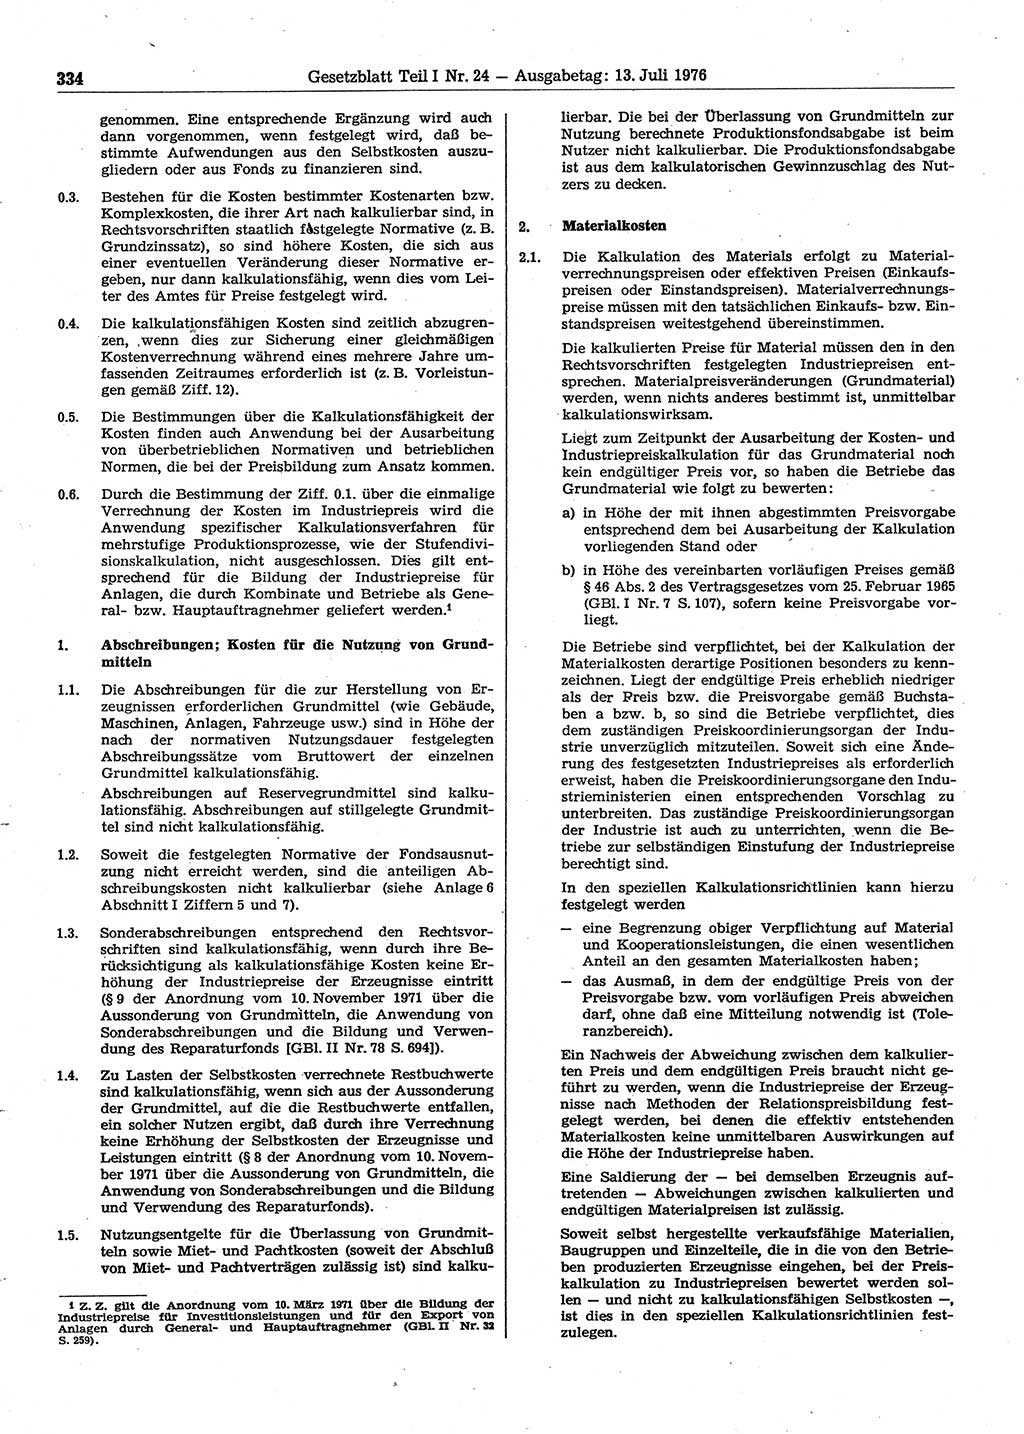 Gesetzblatt (GBl.) der Deutschen Demokratischen Republik (DDR) Teil Ⅰ 1976, Seite 334 (GBl. DDR Ⅰ 1976, S. 334)